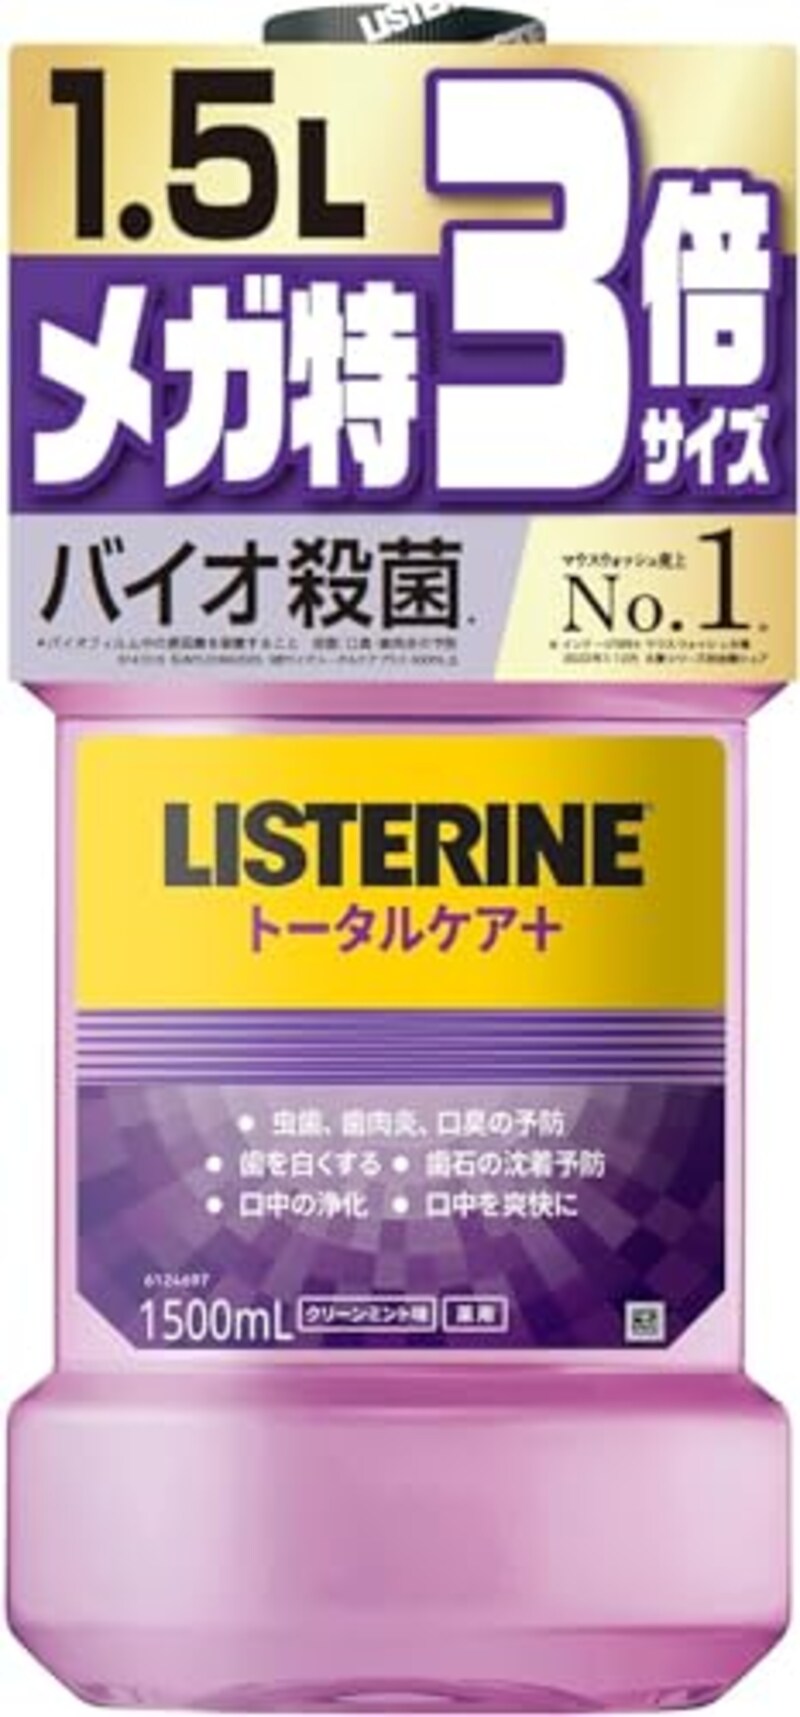 LISTERINE(リステリン),トータルケアプラス マウスウォッシュ クリーンミント味 1.5リットル